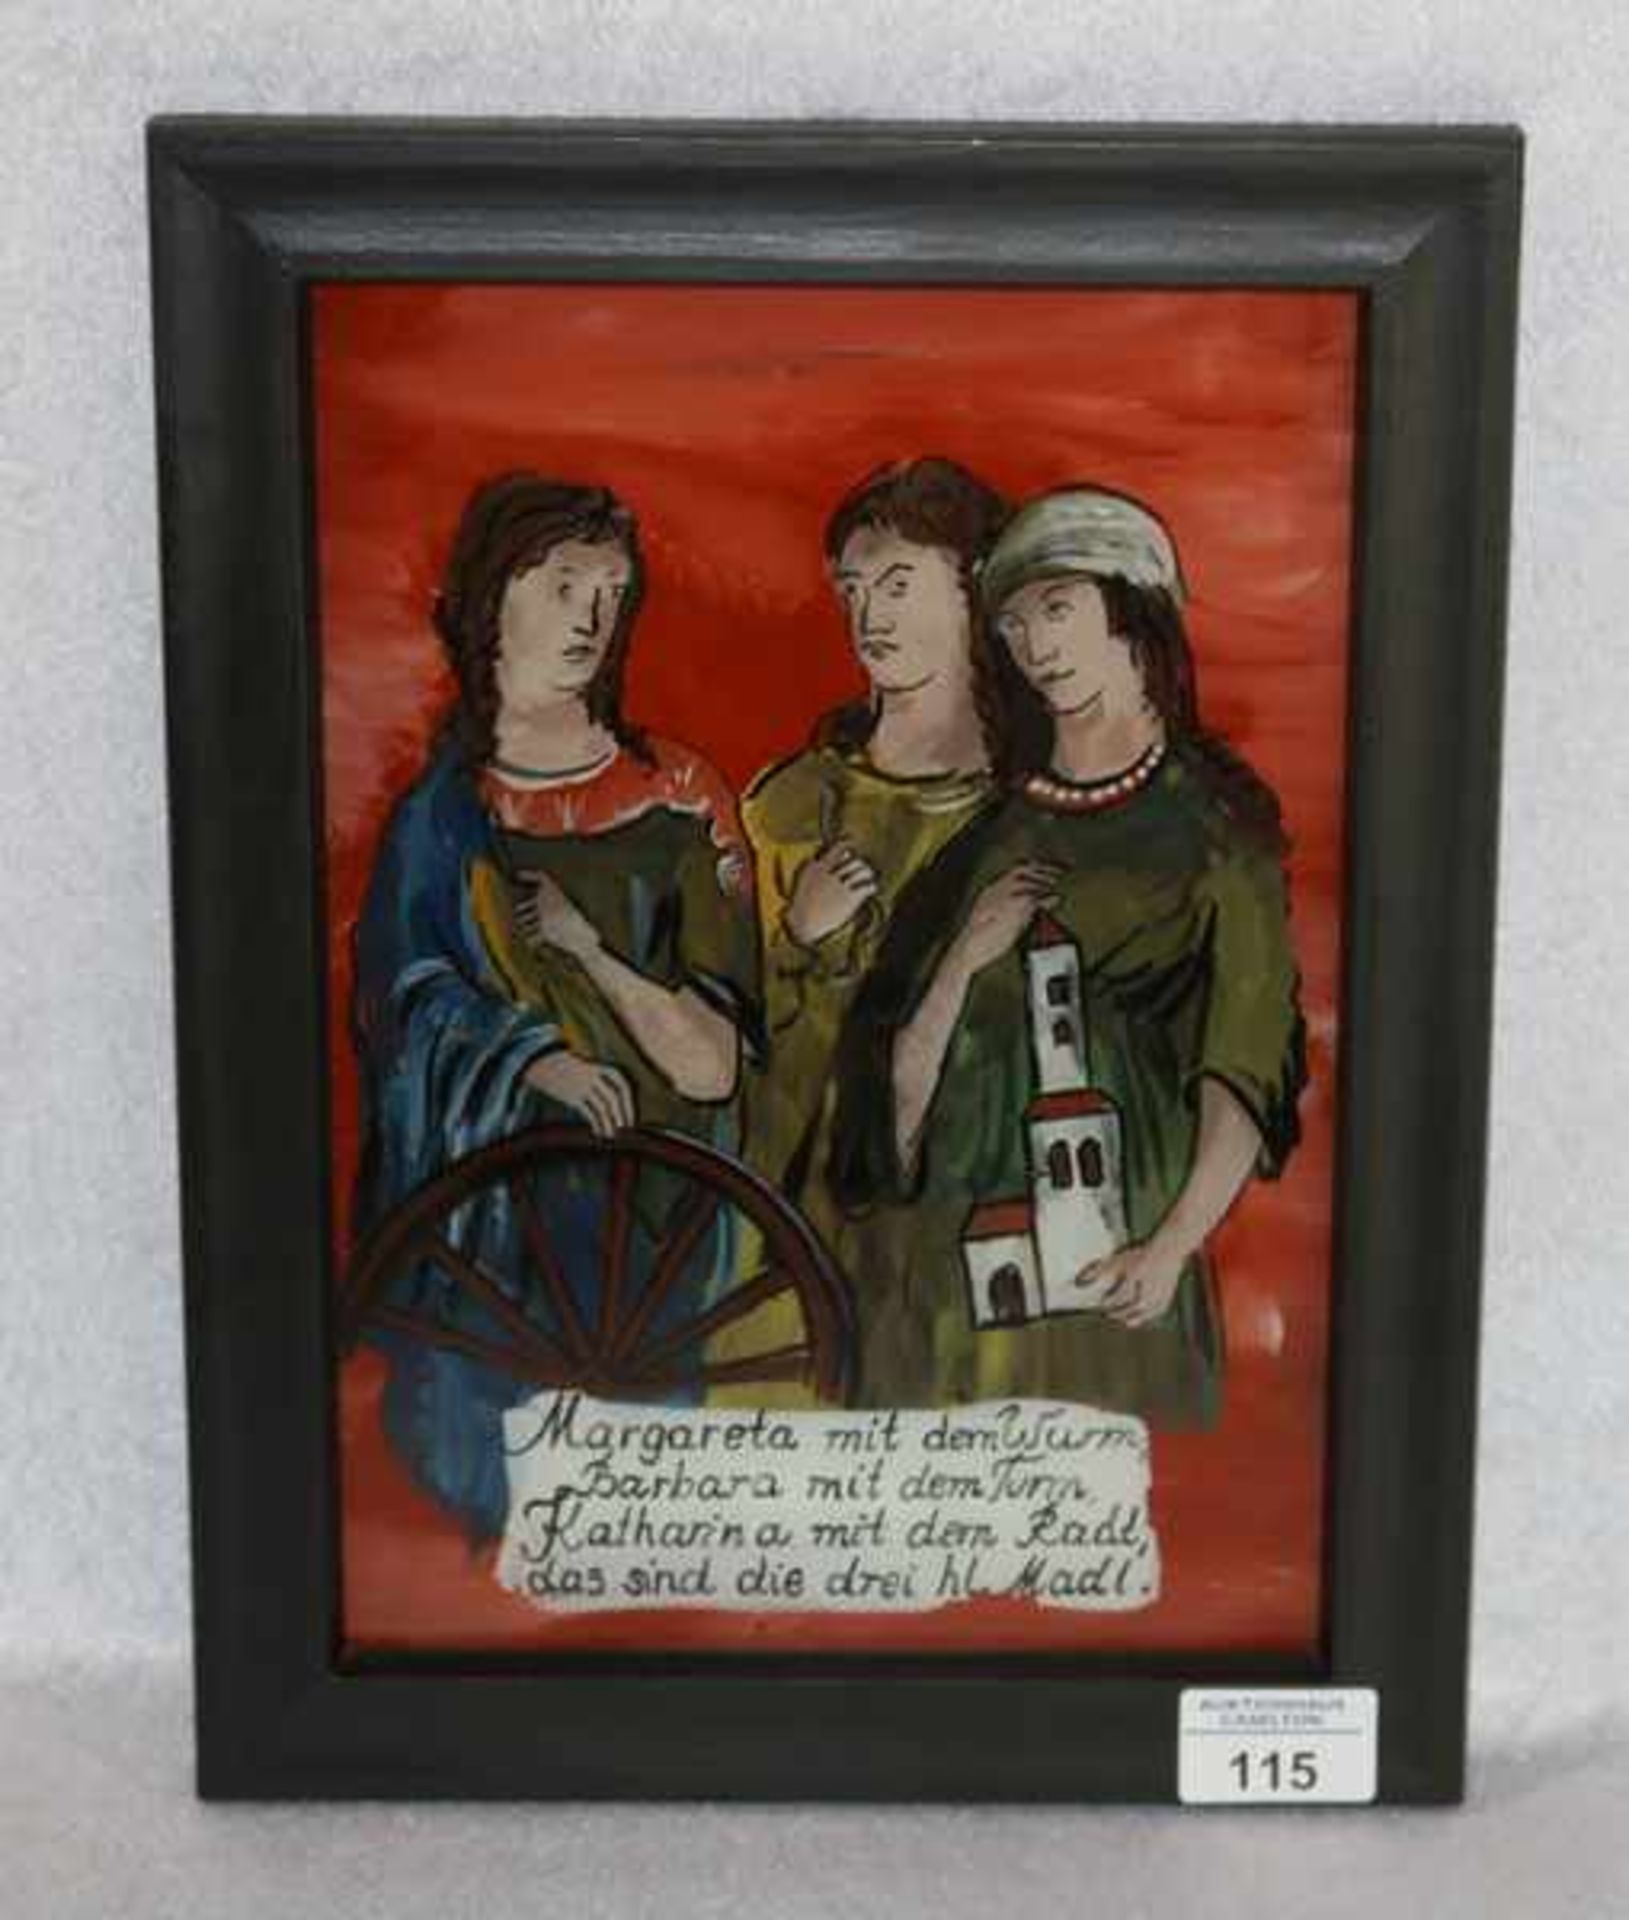 Hinterglasbild 'Die 3 heiligen Madl', gerahmt, incl. Rahmen 33 cm x 24,5 cm